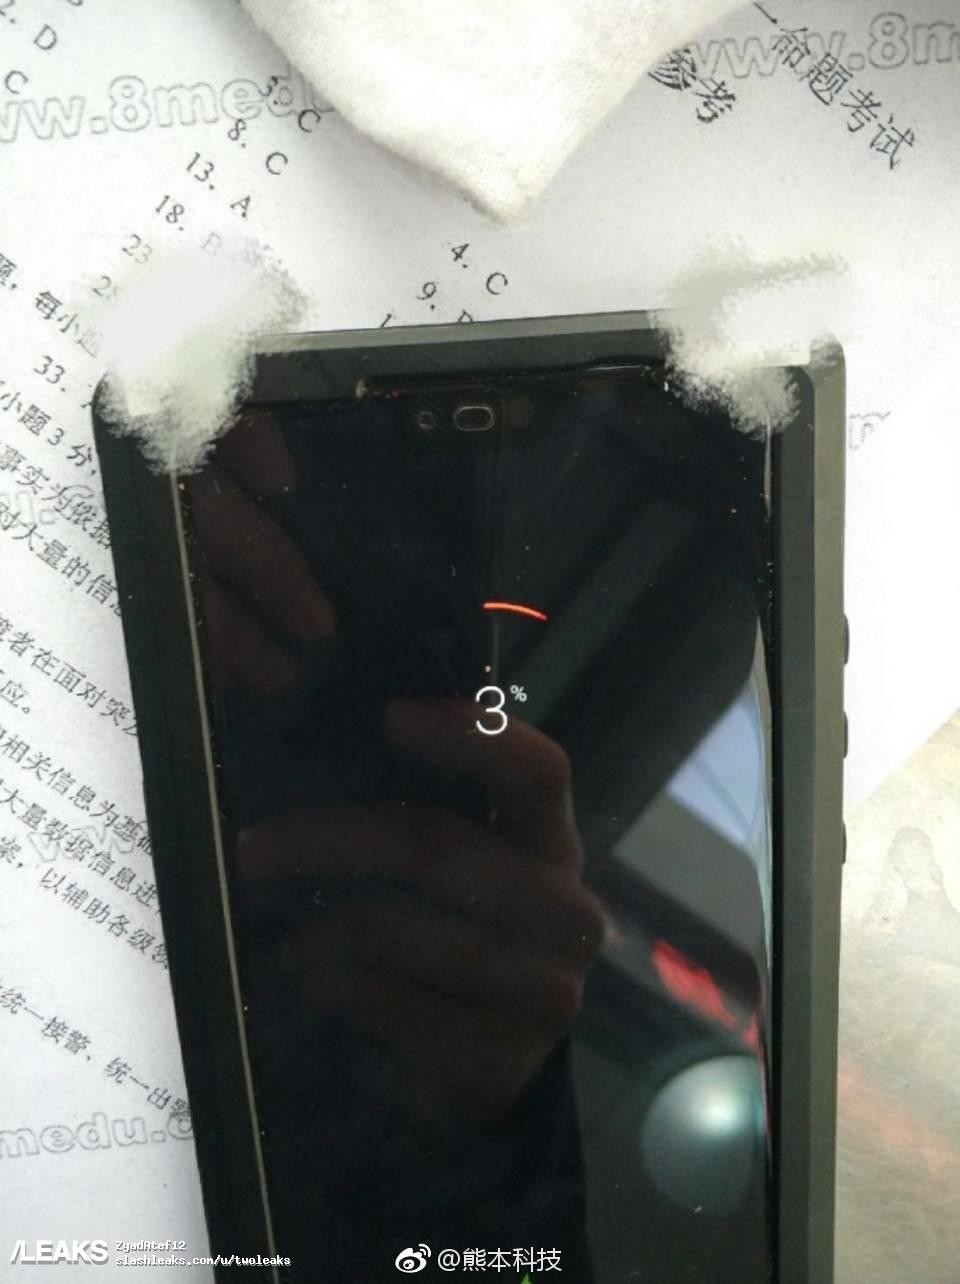 Nguyên mẫu Huawei P20 lộ diện: tai thỏ như iPhone X, chỉ có camera kép ảnh 2